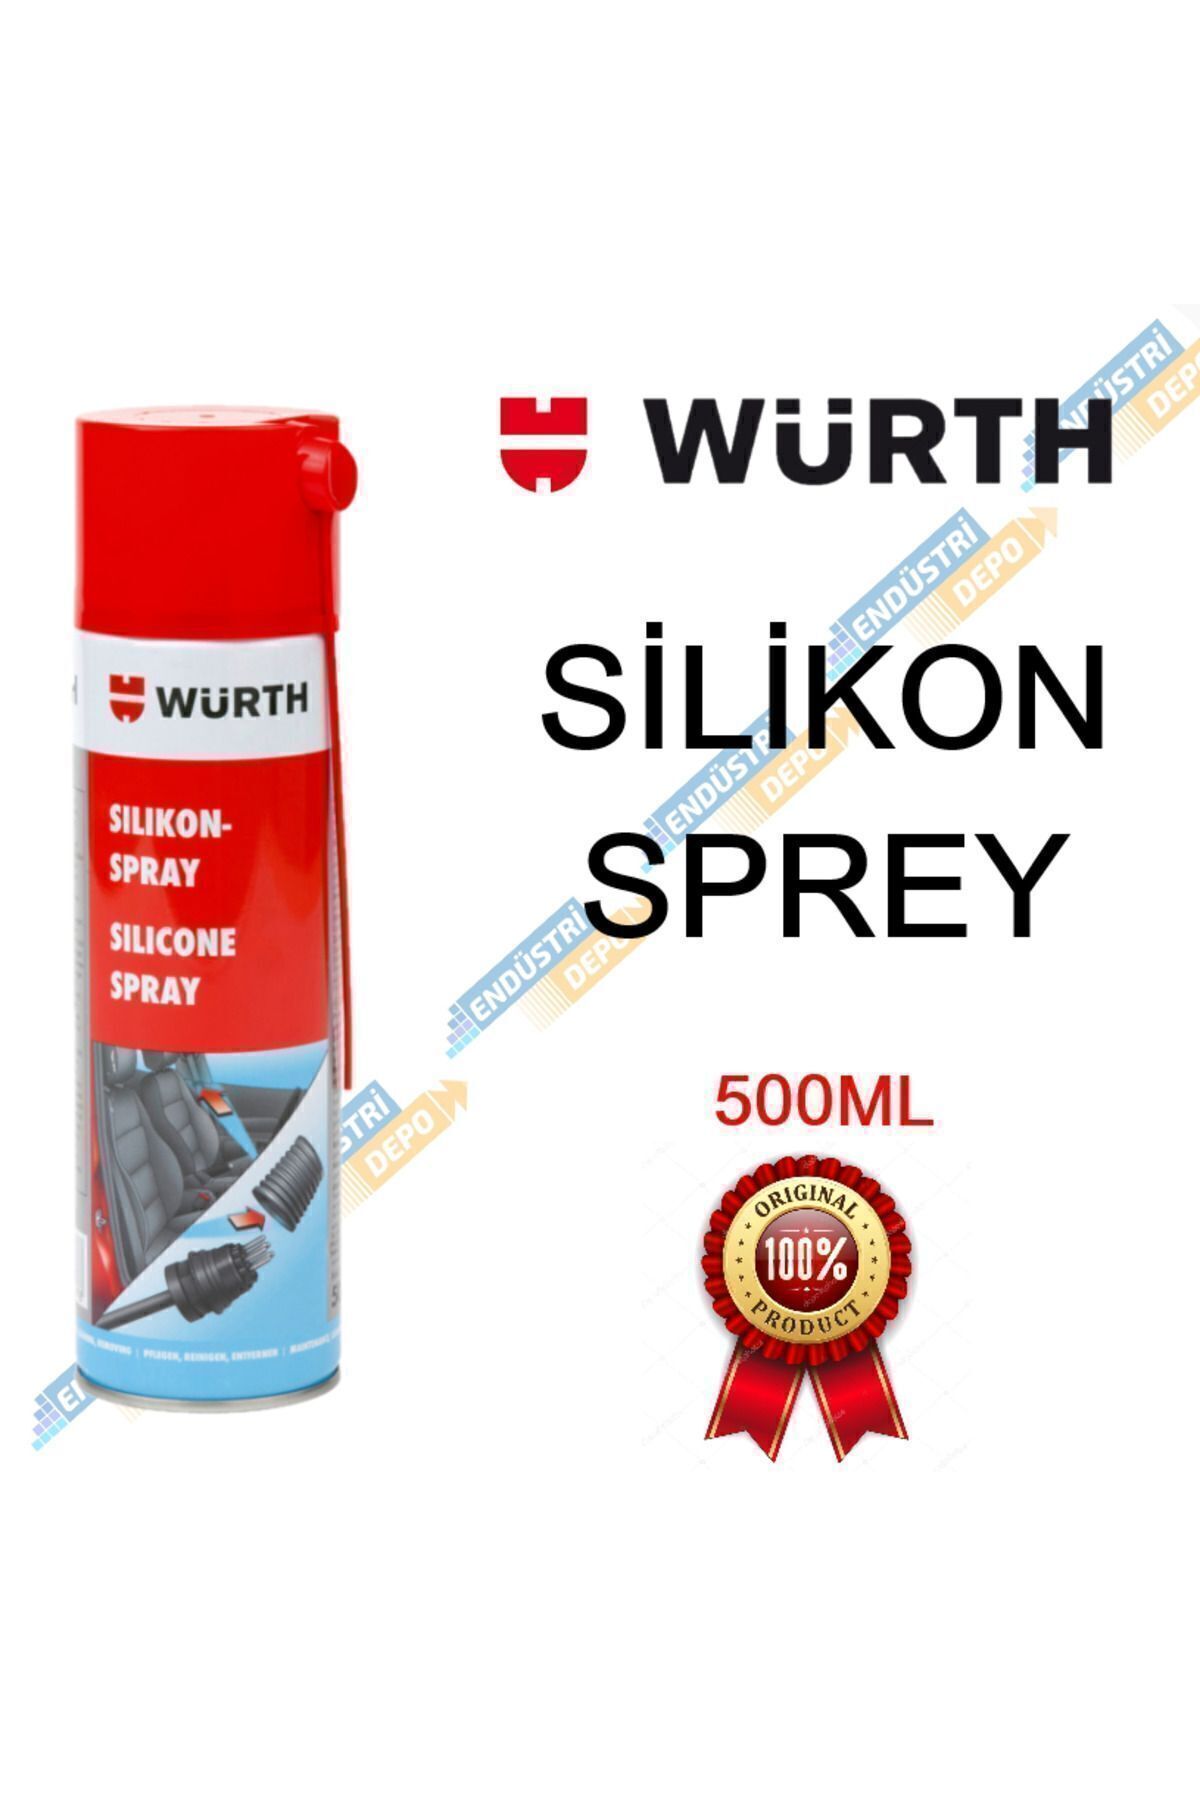 Würth Silikon Sprey 500 Ml. Made In Germany